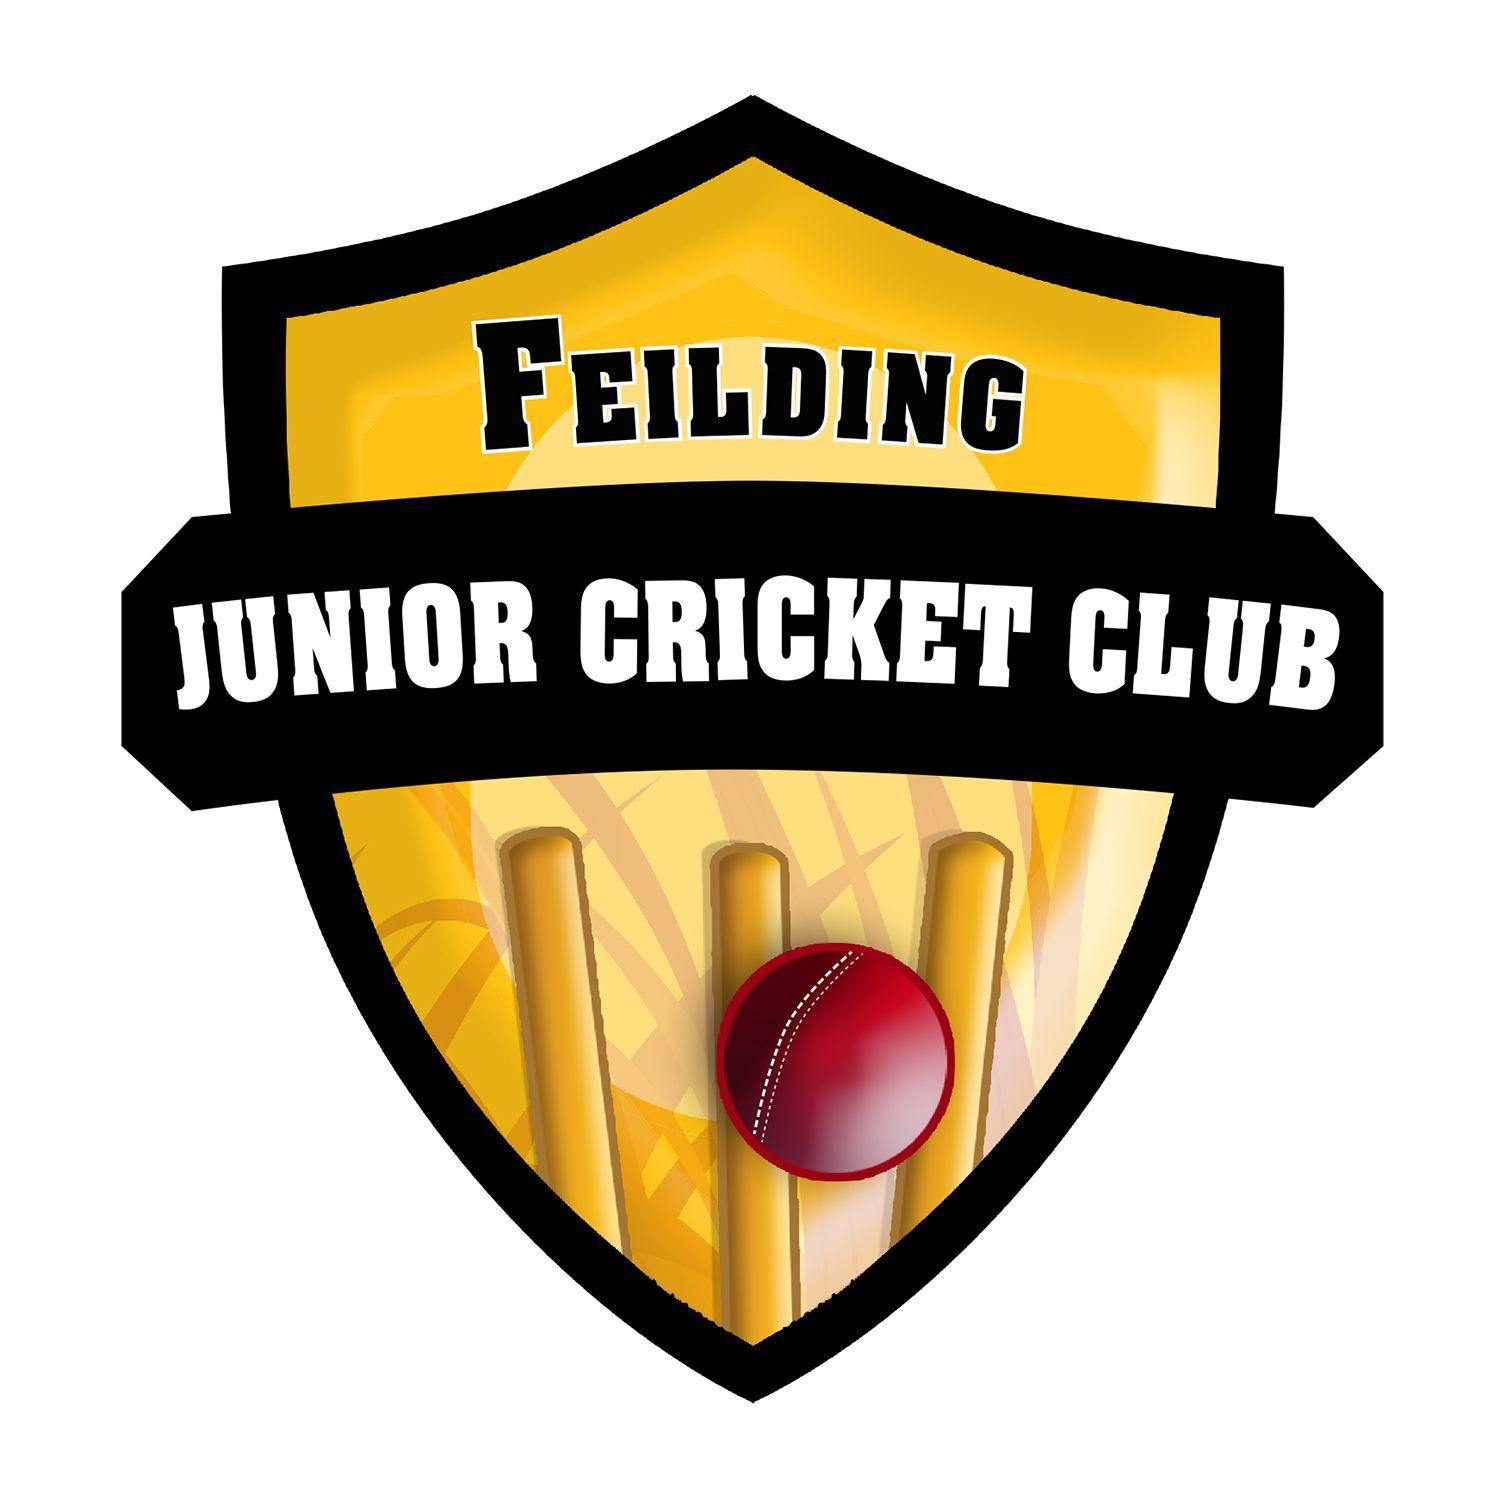 Cricket Club Logo - Professional, Masculine, Club Logo Design for Feilding Junior ...